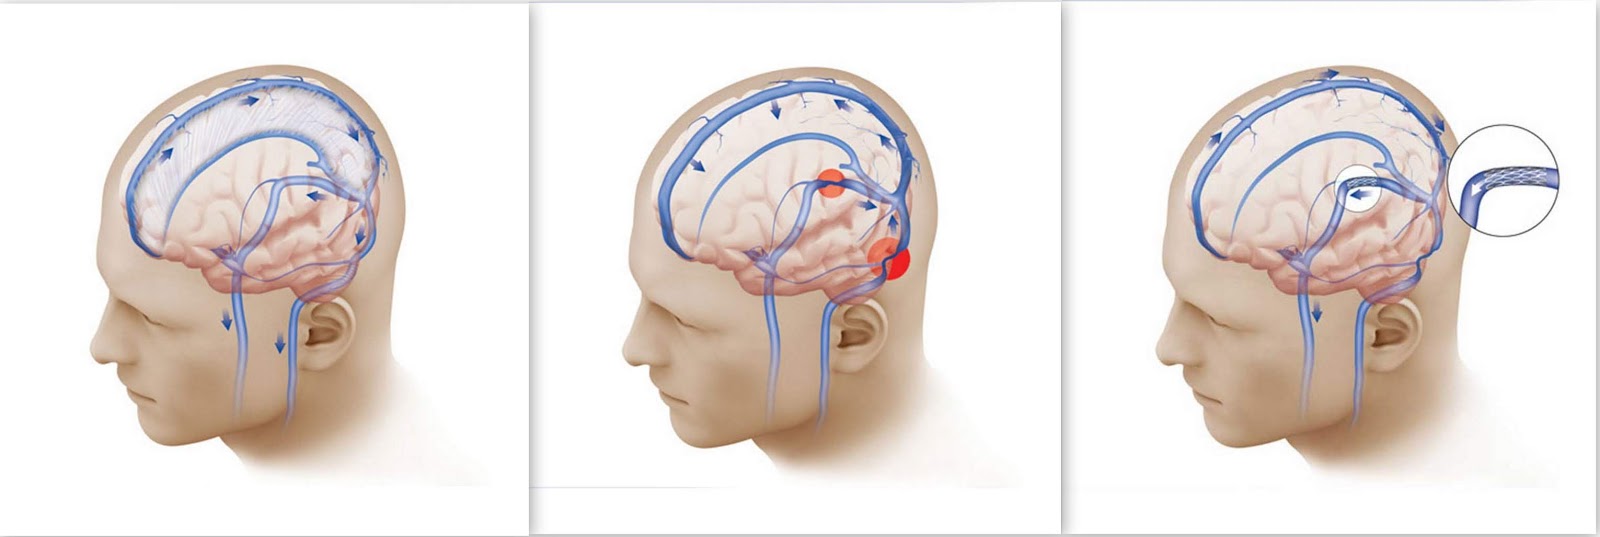 Ангиодистония сосудов. Венозный отток головного мозга. Затруднение венозного оттока головного мозга. Венозный отток крови головы.